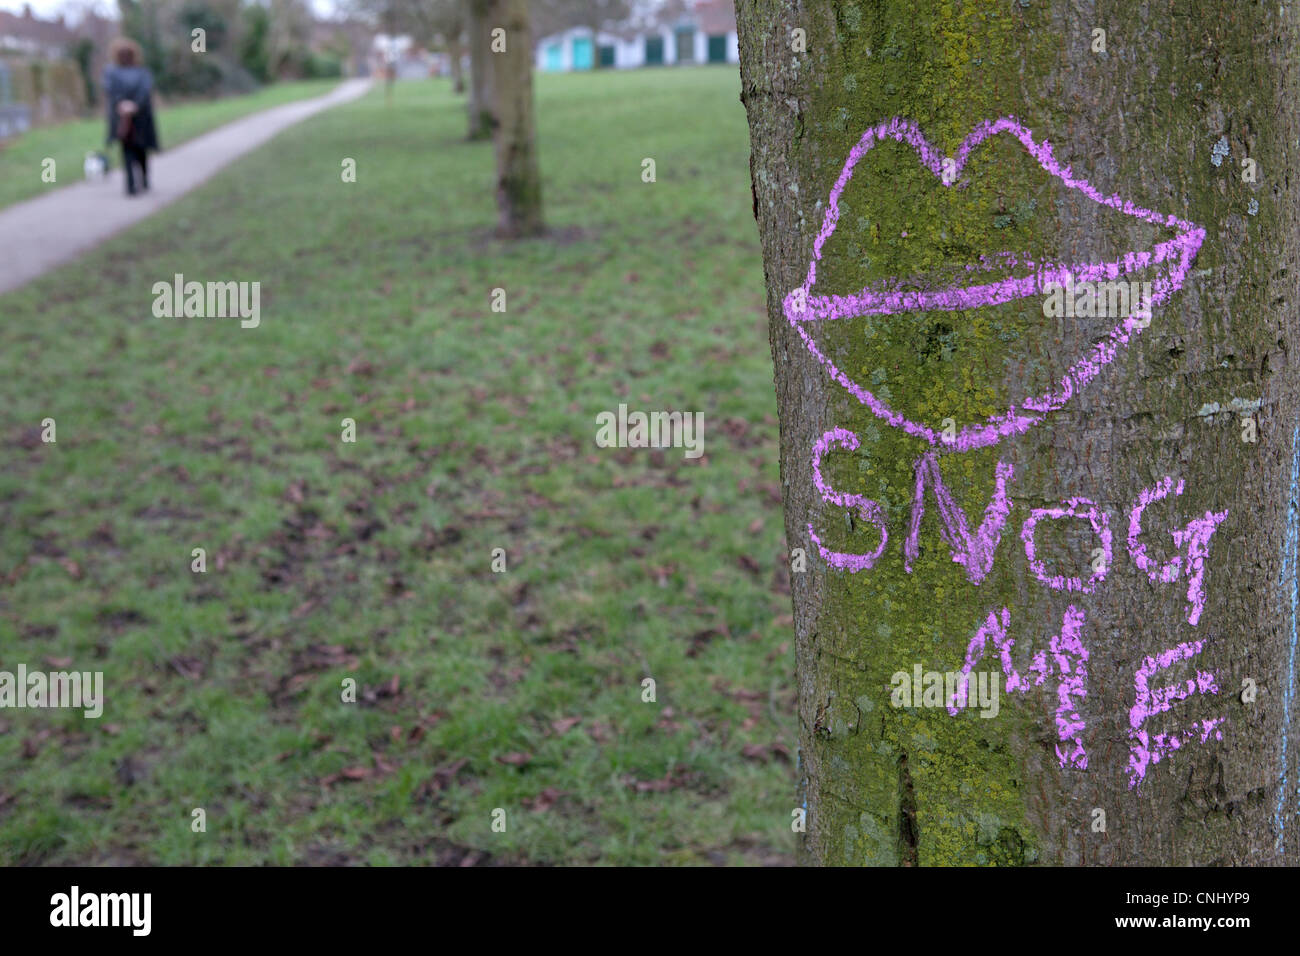 Lippen und "Knutschen mir", gezeichnet auf einem Baumstamm im park Stockfoto